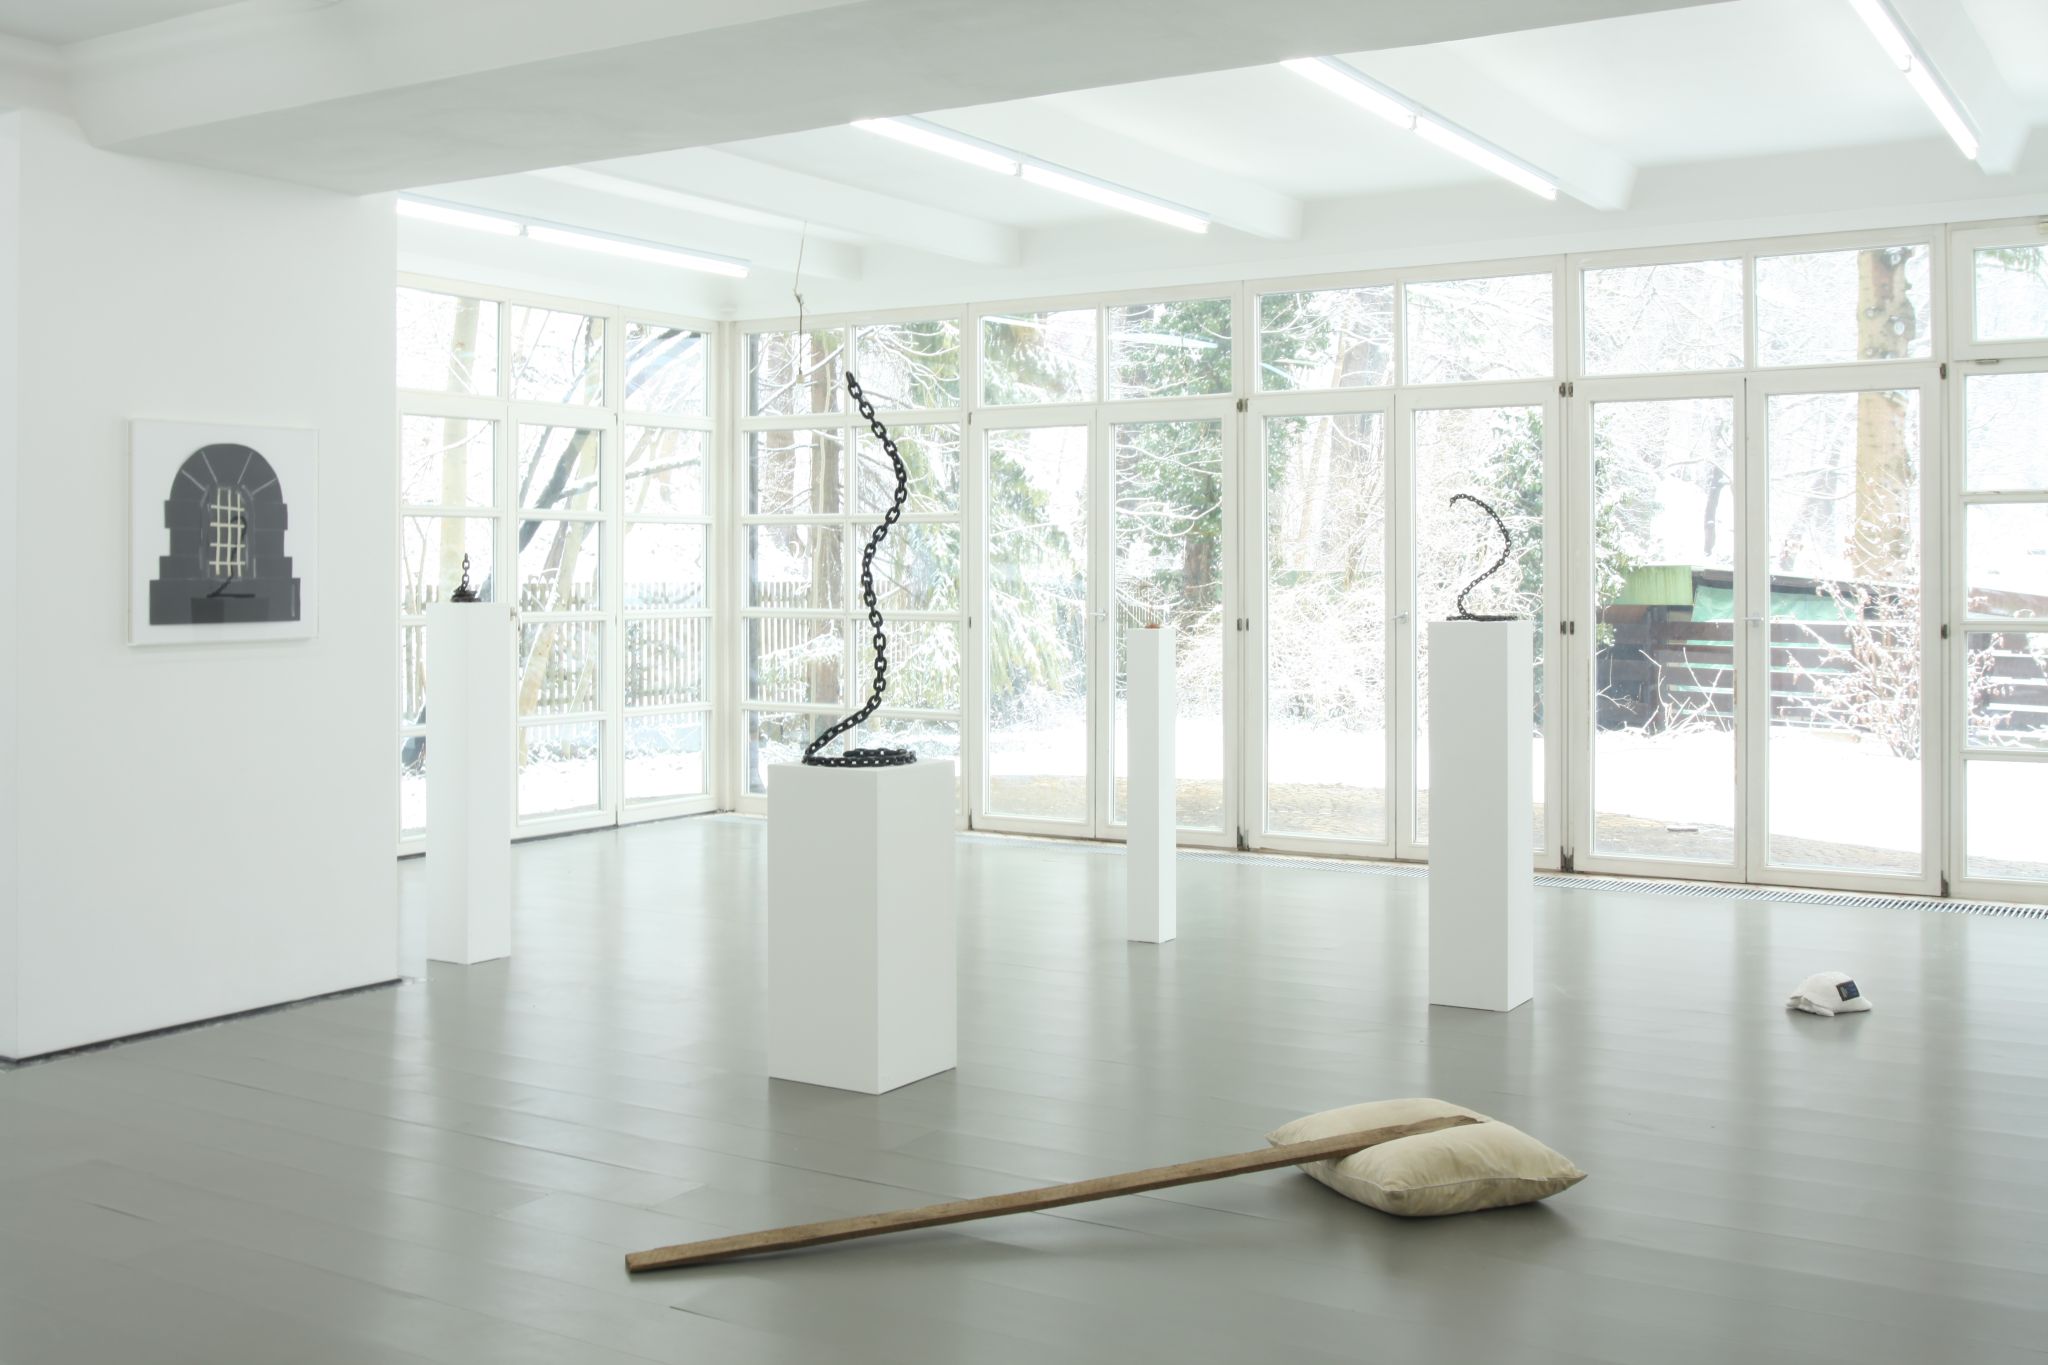 Installation view, KUKUK, Deborah Schamoni, 2013